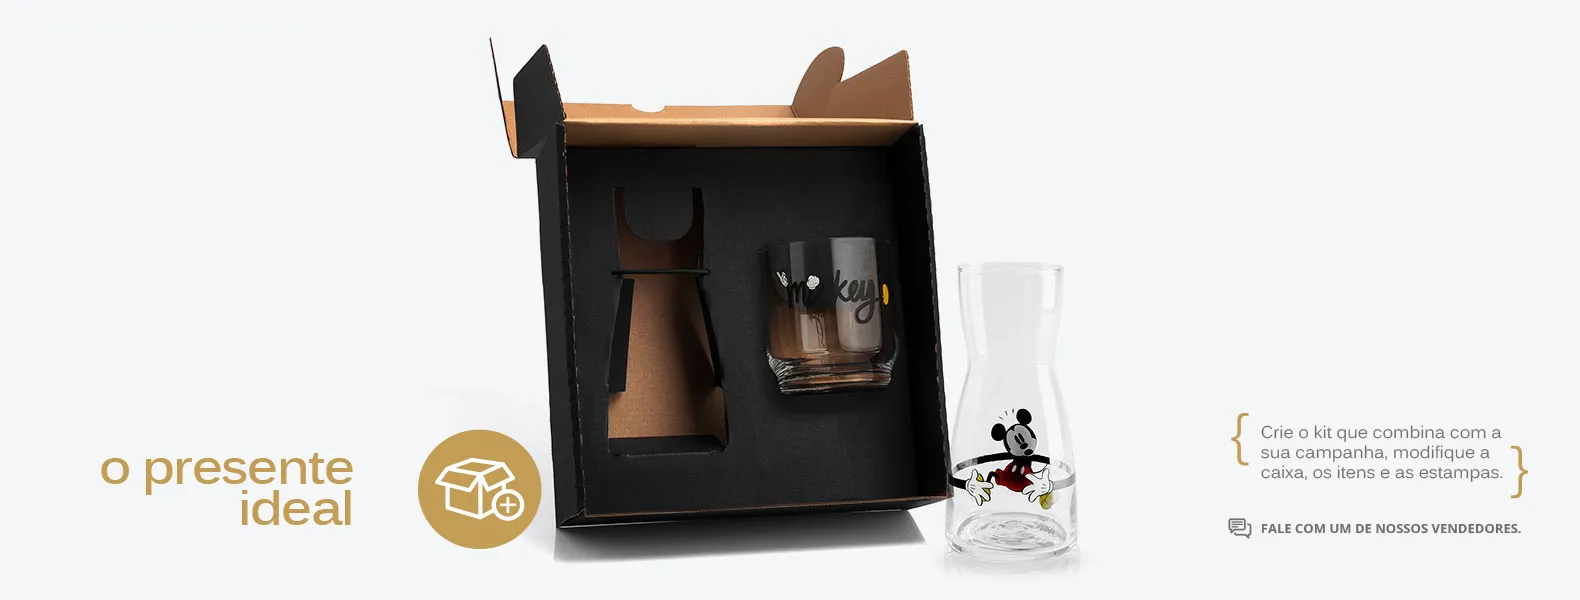 Kit personalizado contendo uma moringa com copo Mickey em vidro e embalagem.